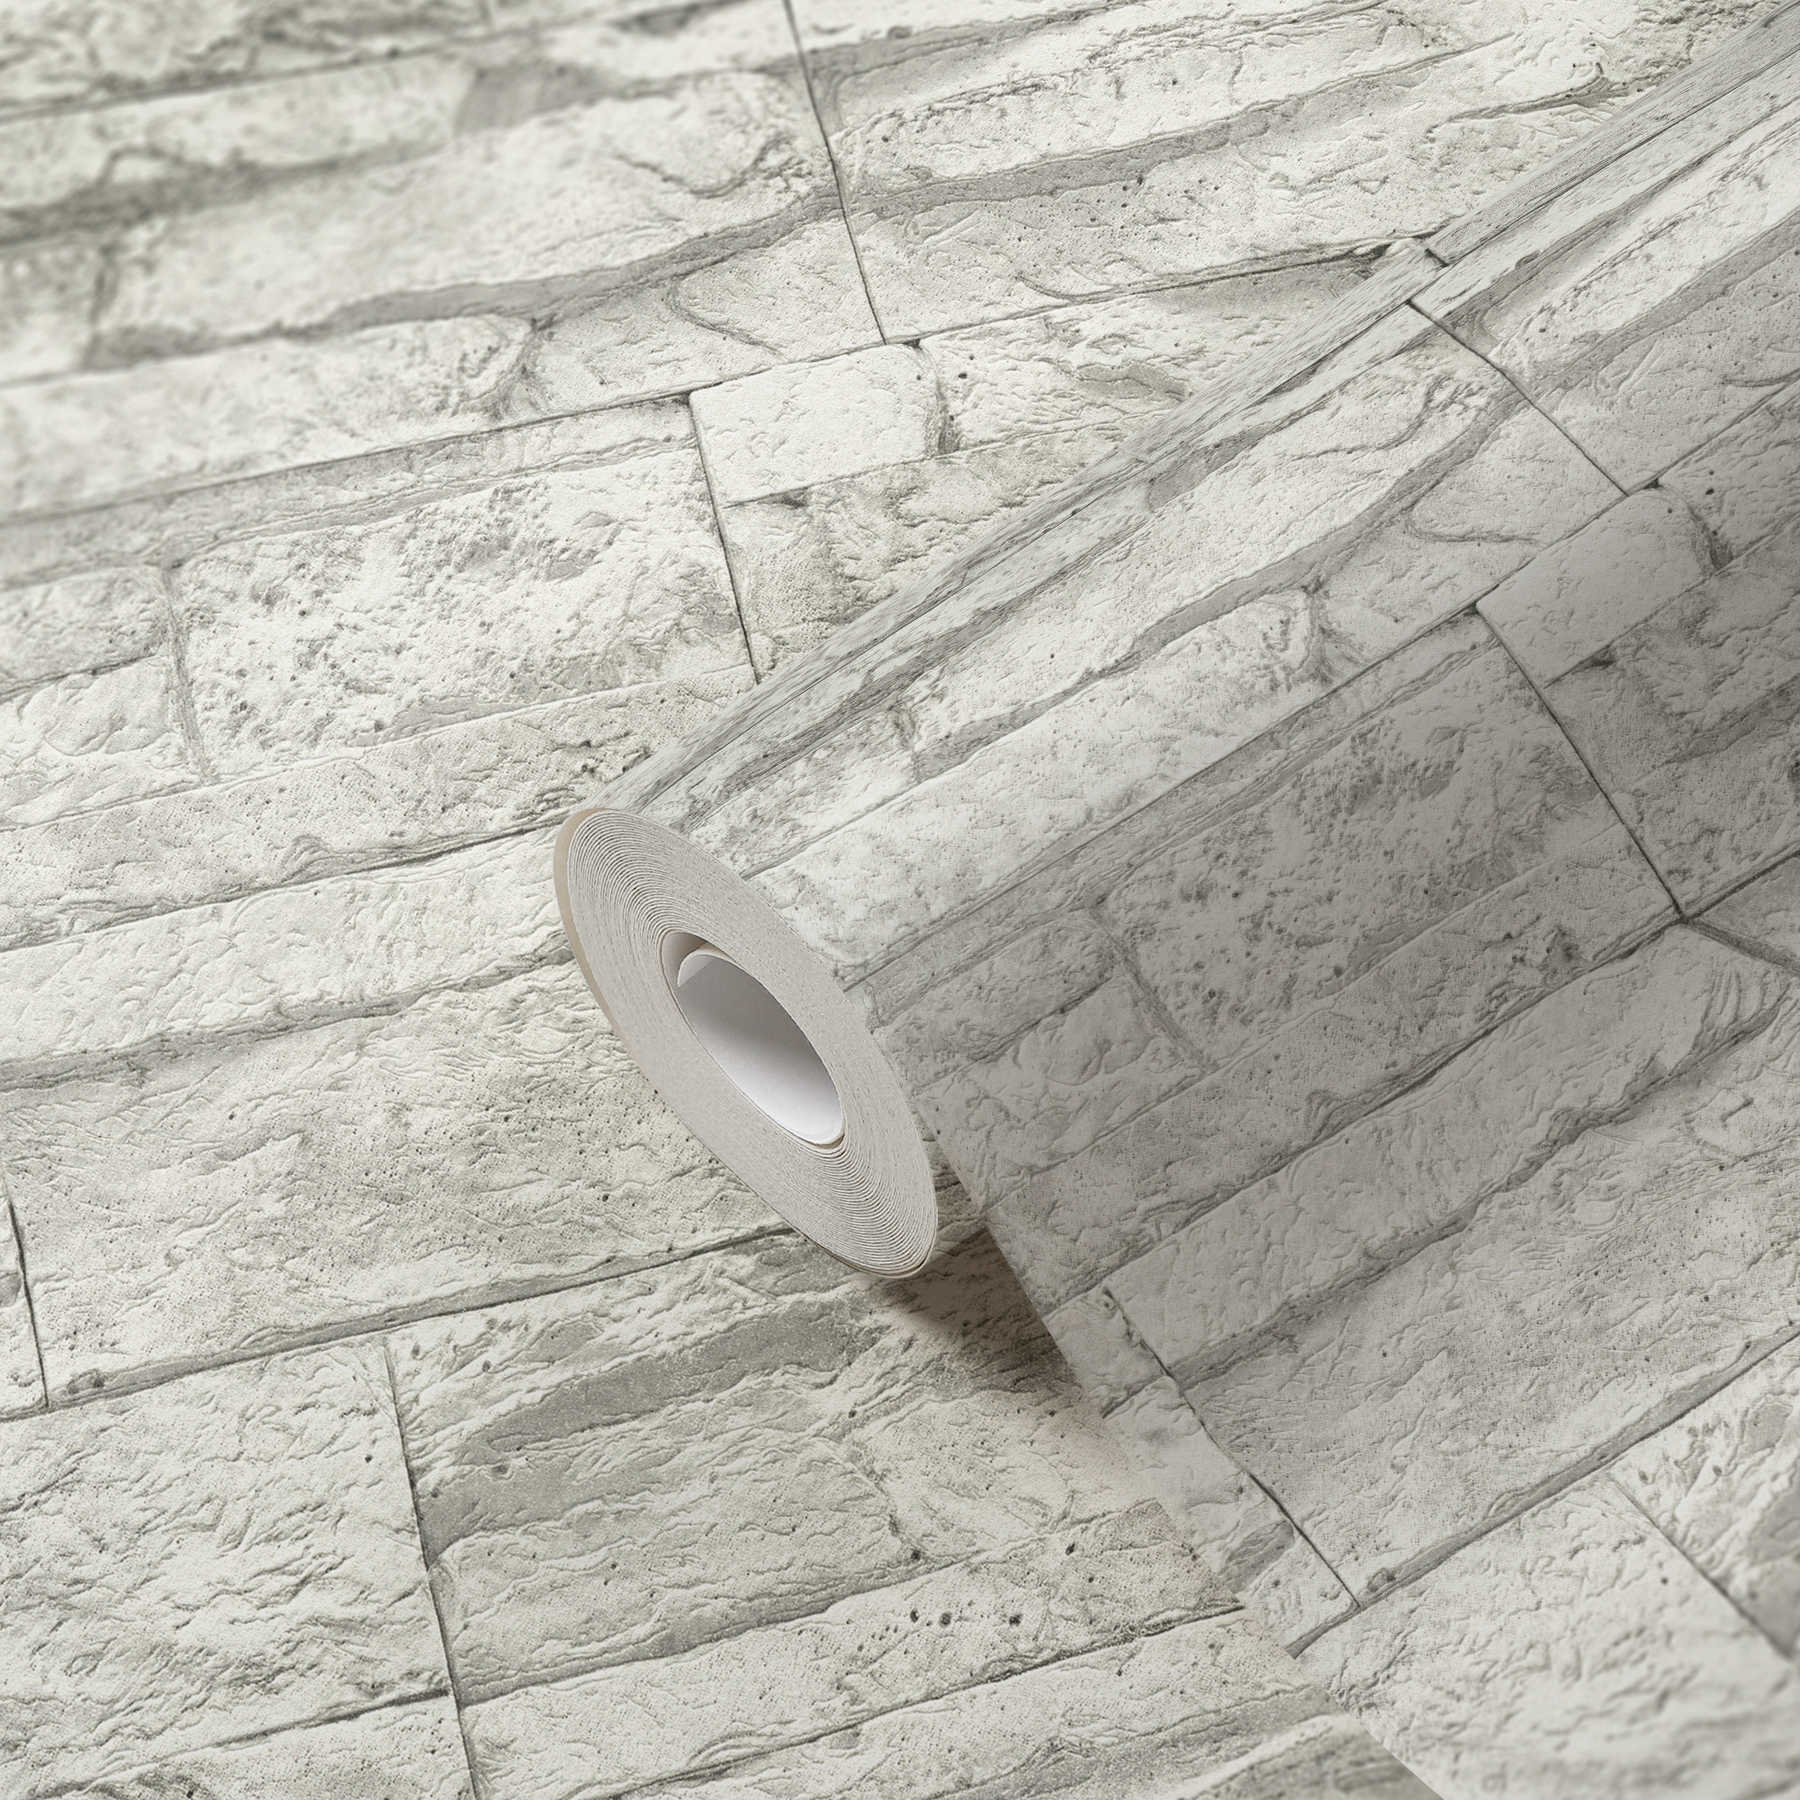             Tapete mit hellem Mauerwerk aus Natursteinen – Weiß, Grau
        